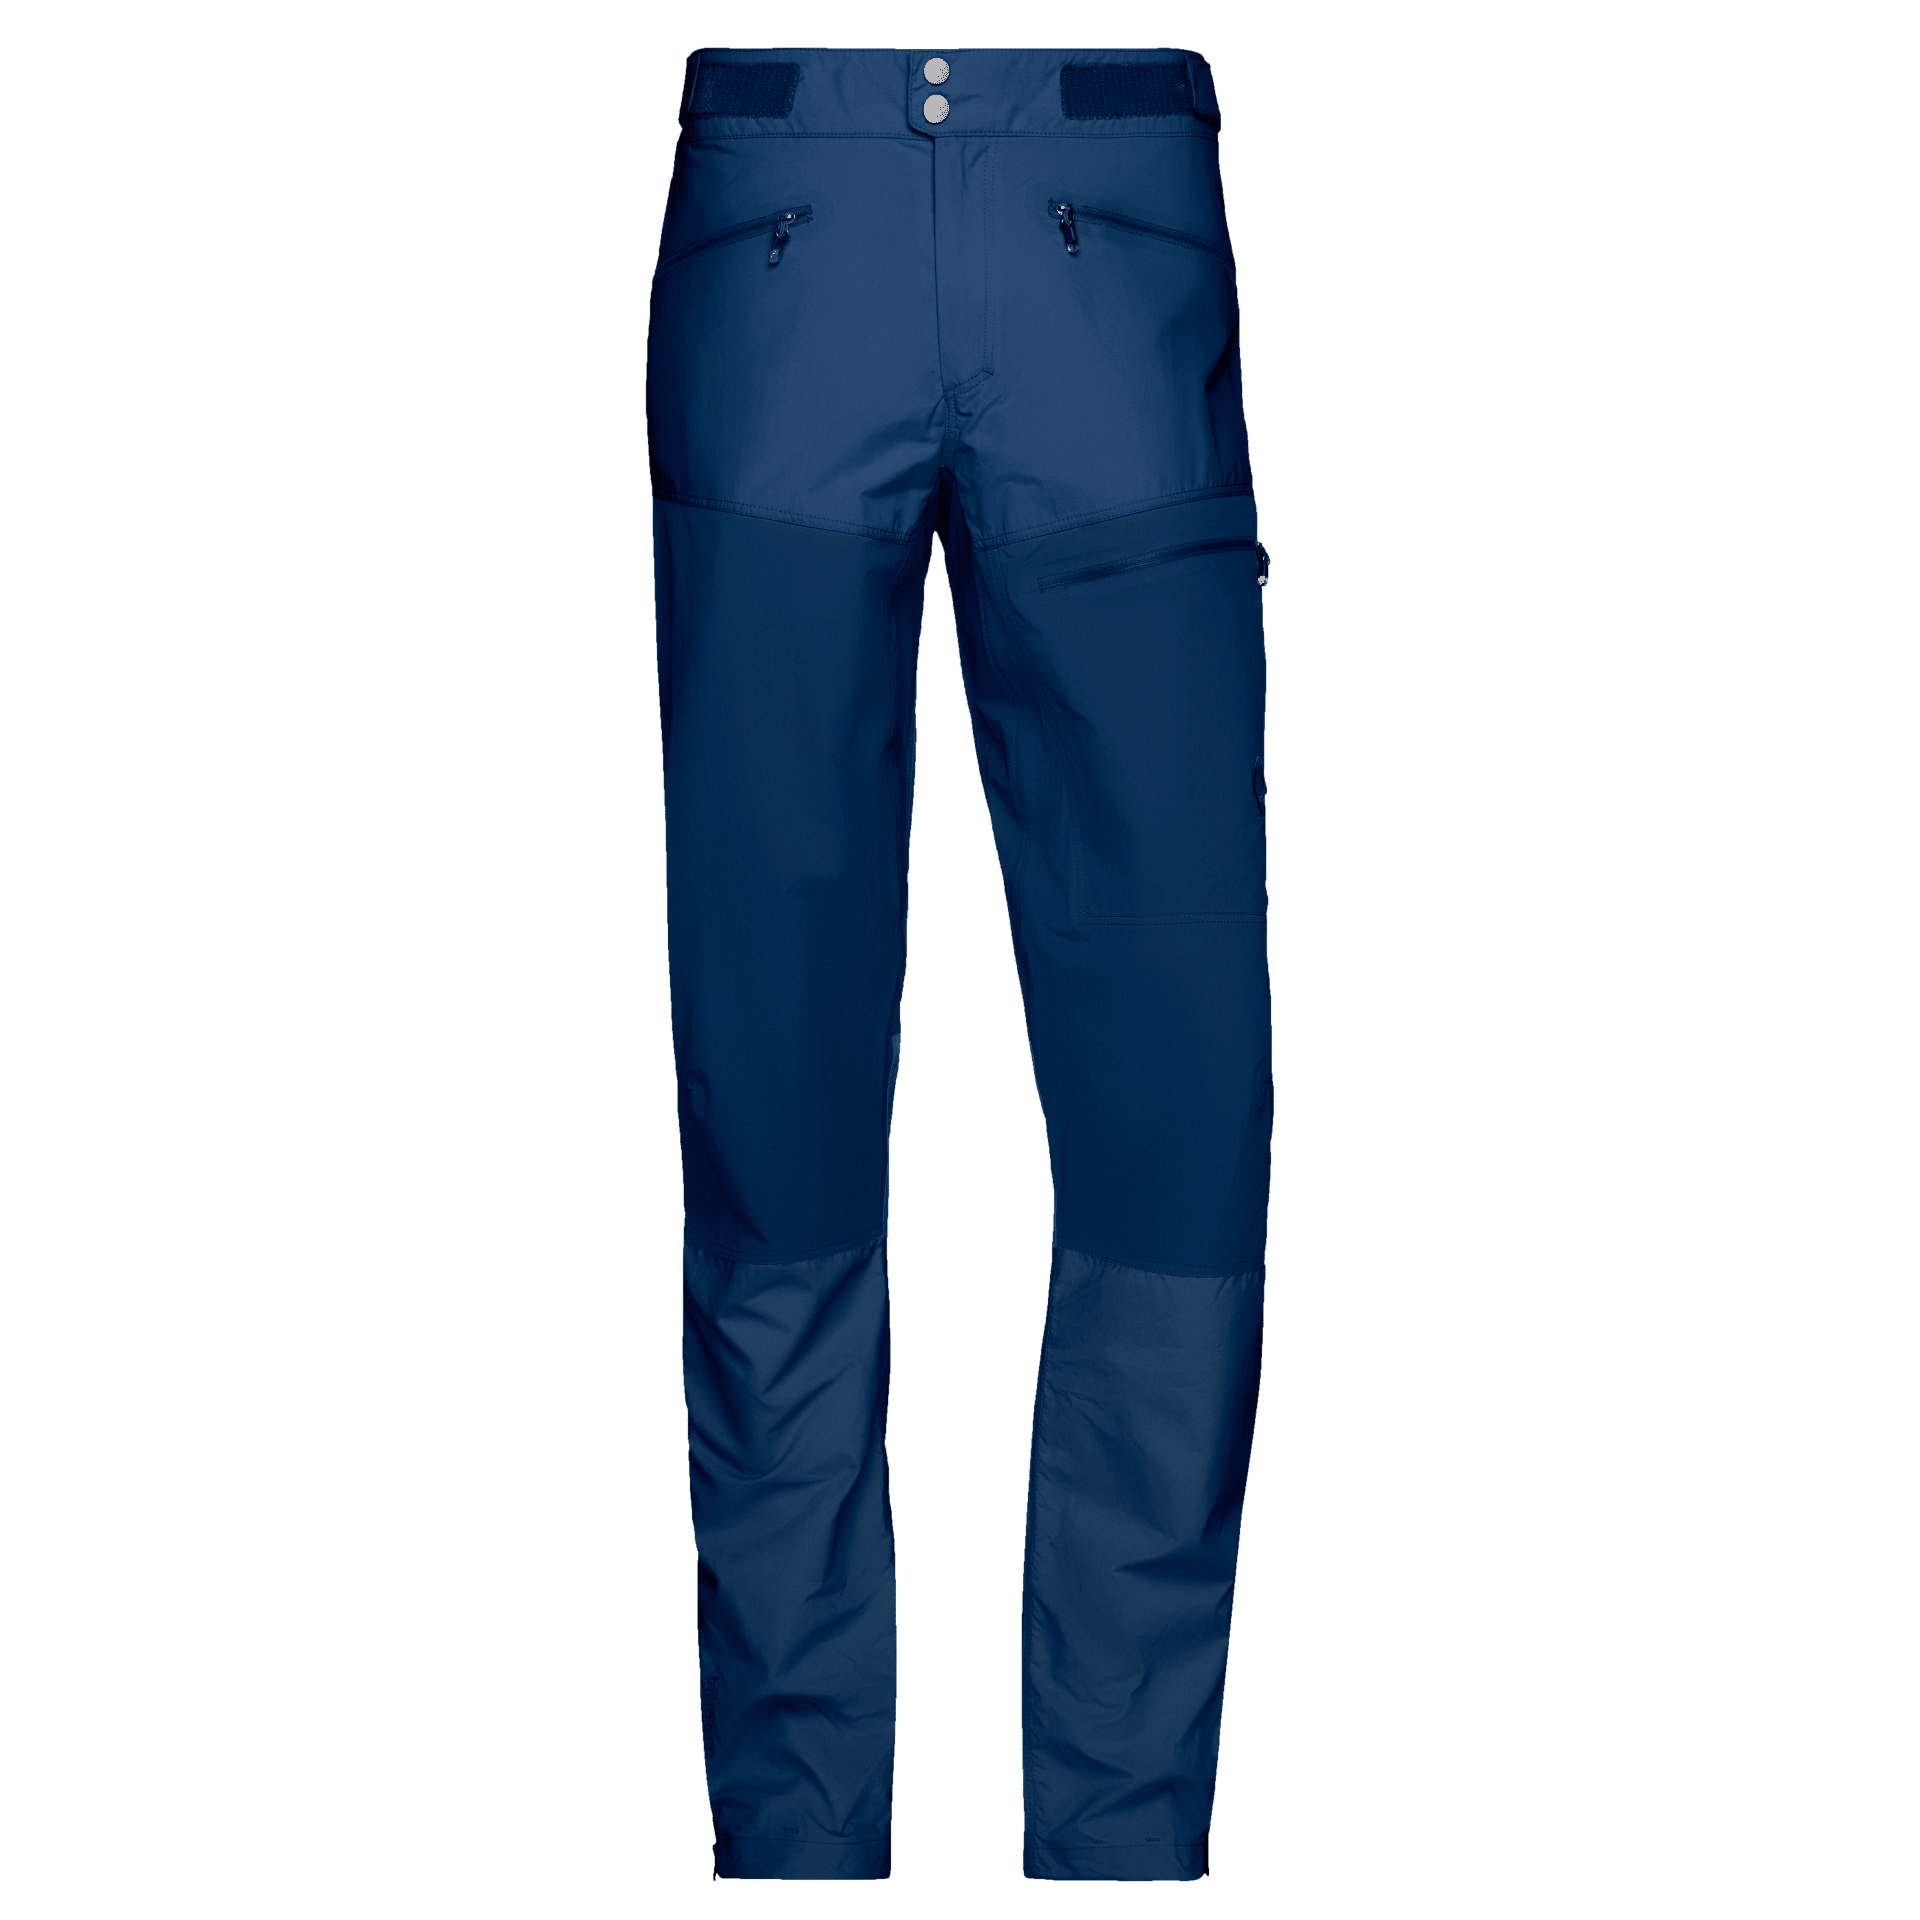 Nørrona Bitihorn Lightweight Pants - Pantalón de trekking - Hombre